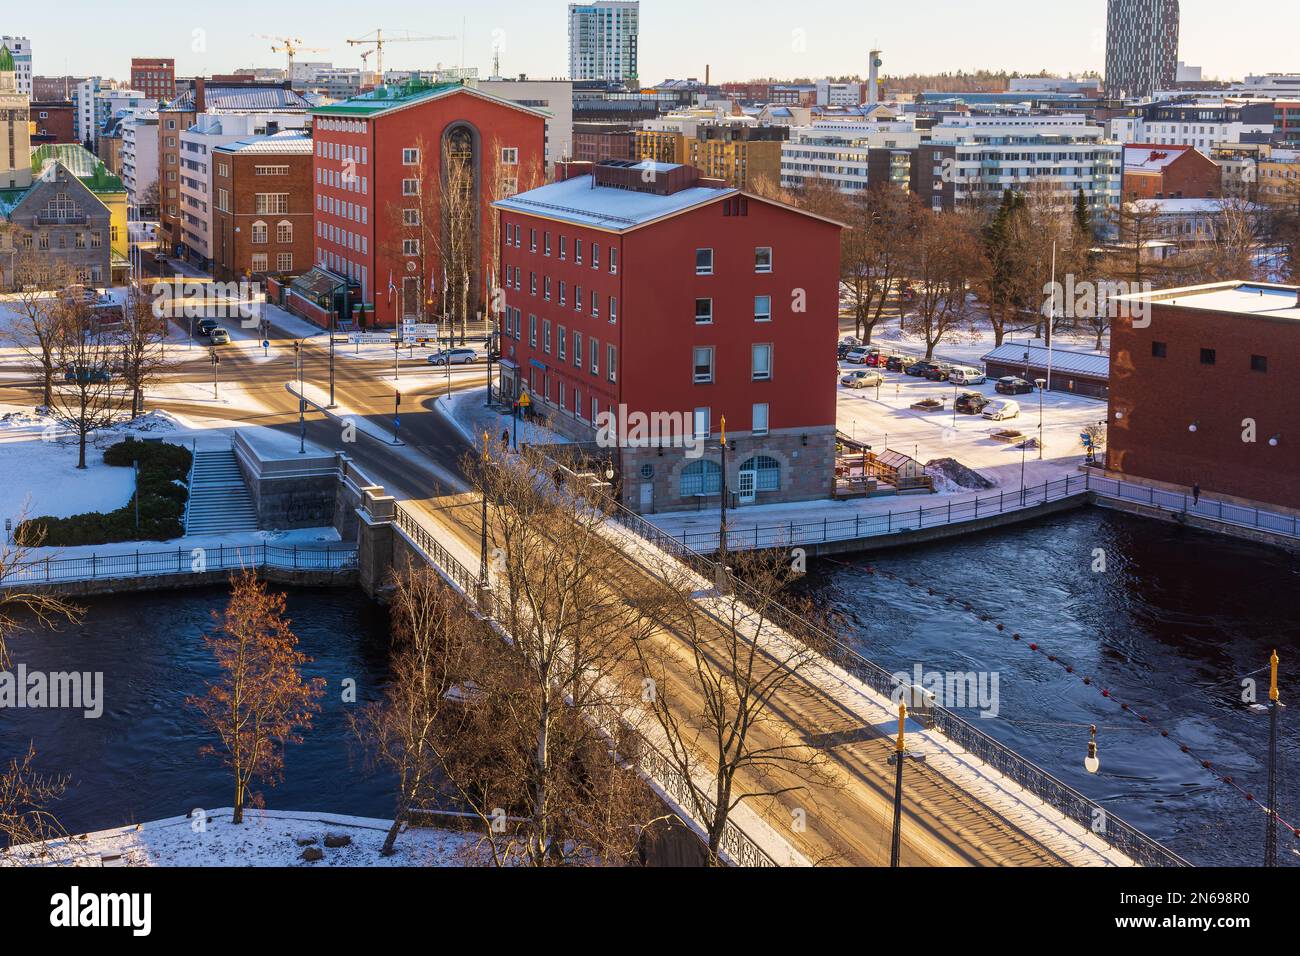 Satakunnan silta bridge over Tammerkoski rapid in Tampere Finland Stock Photo